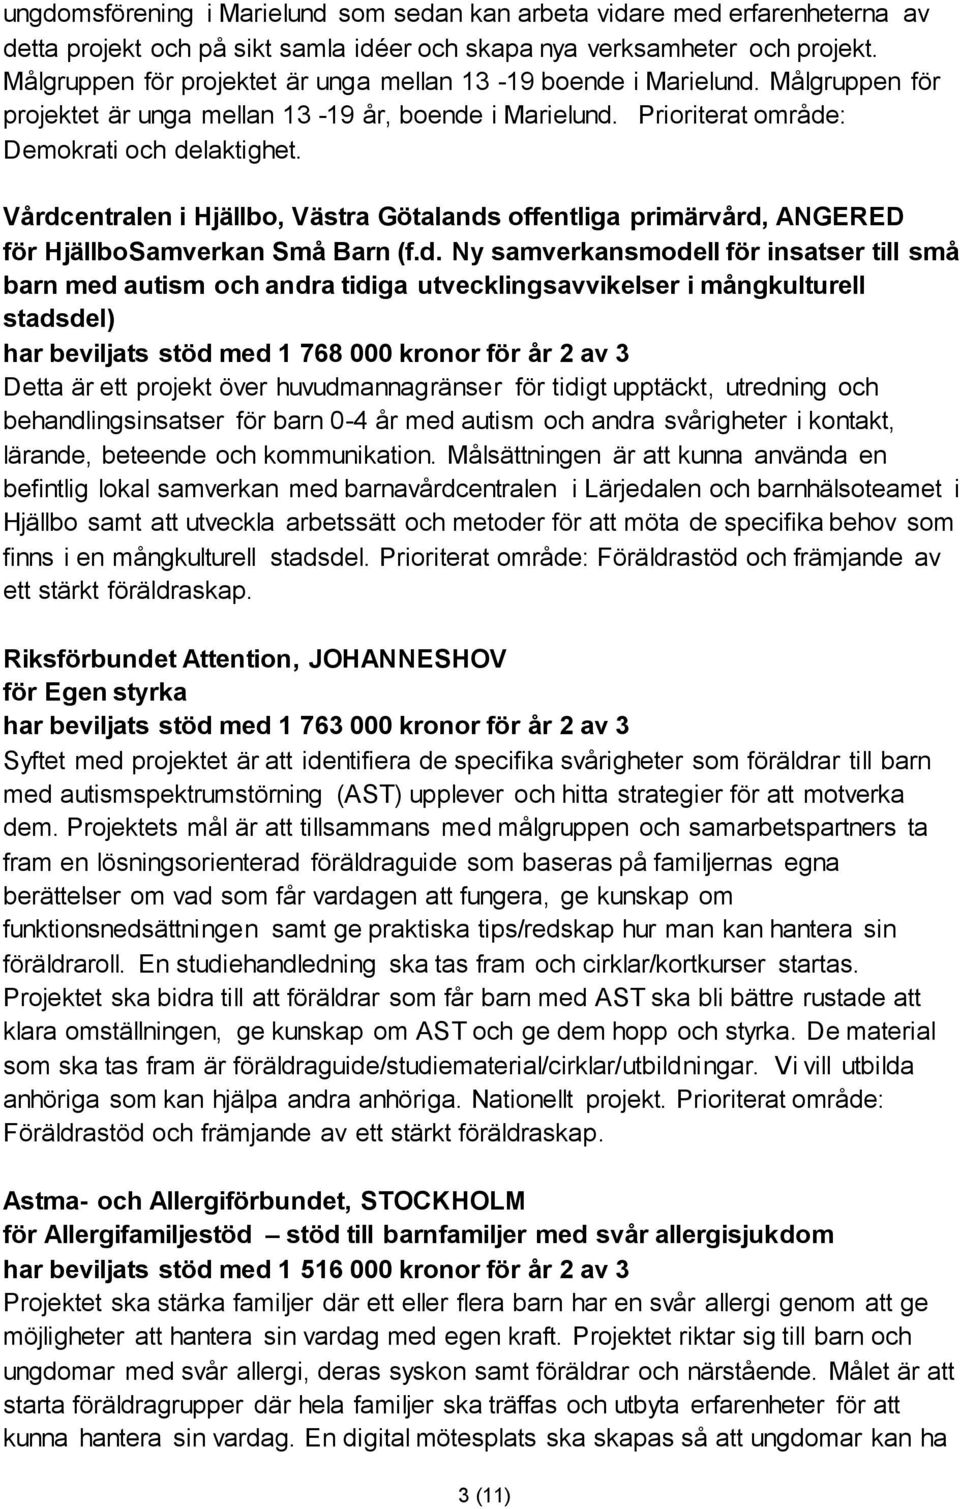 Vårdcentralen i Hjällbo, Västra Götalands offentliga primärvård, ANGERED för HjällboSamverkan Små Barn (f.d. Ny samverkansmodell för insatser till små barn med autism och andra tidiga